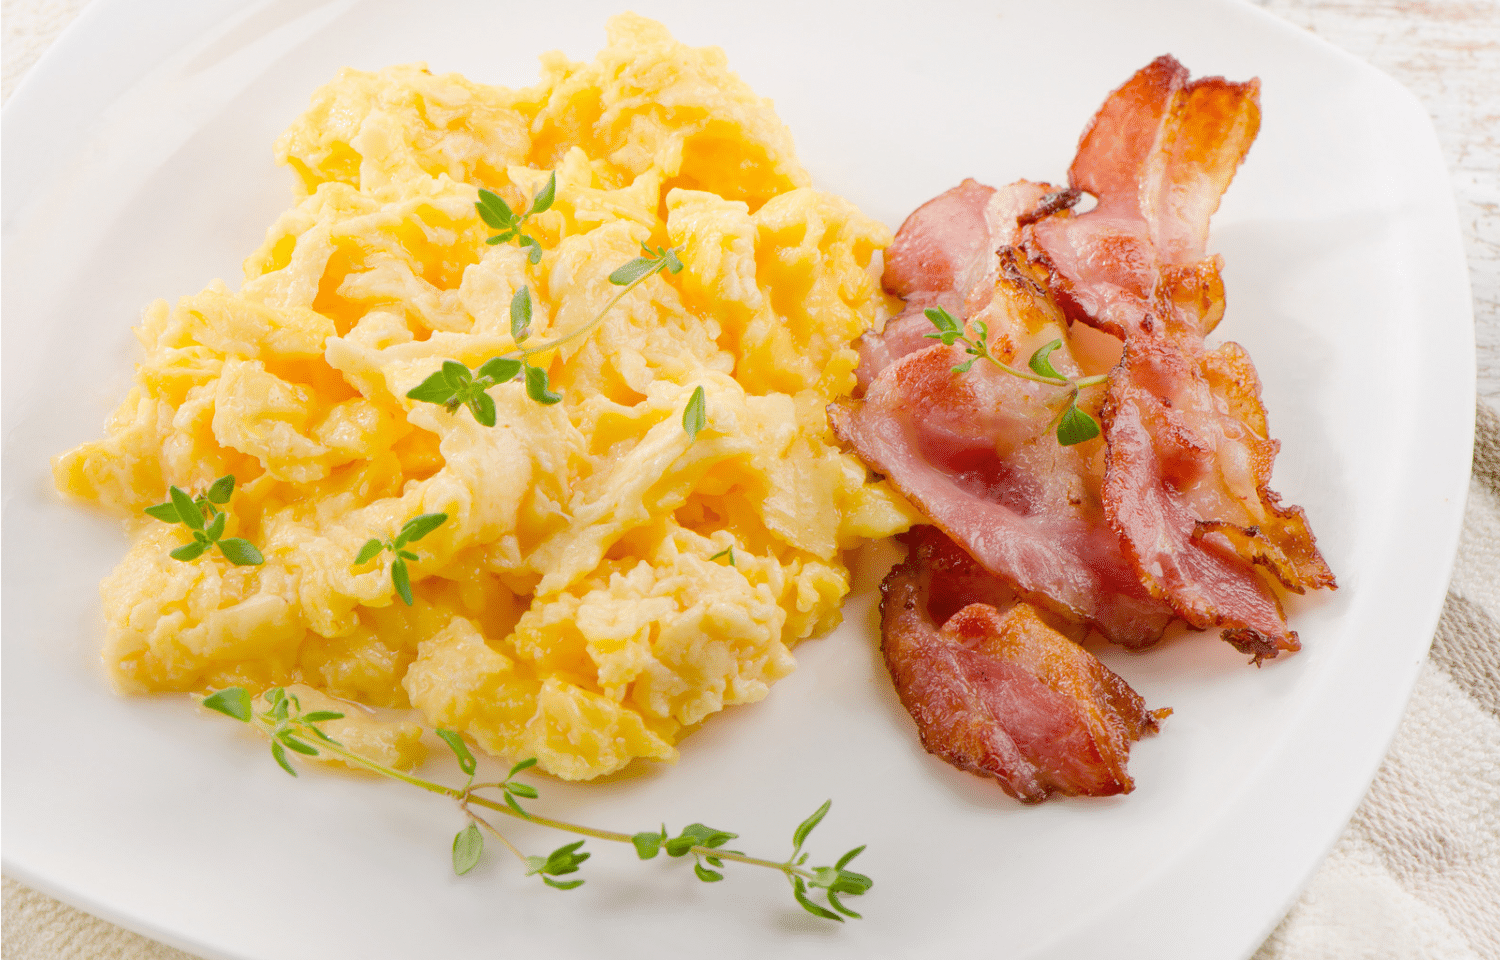 Café da manhã com ovo e bacon